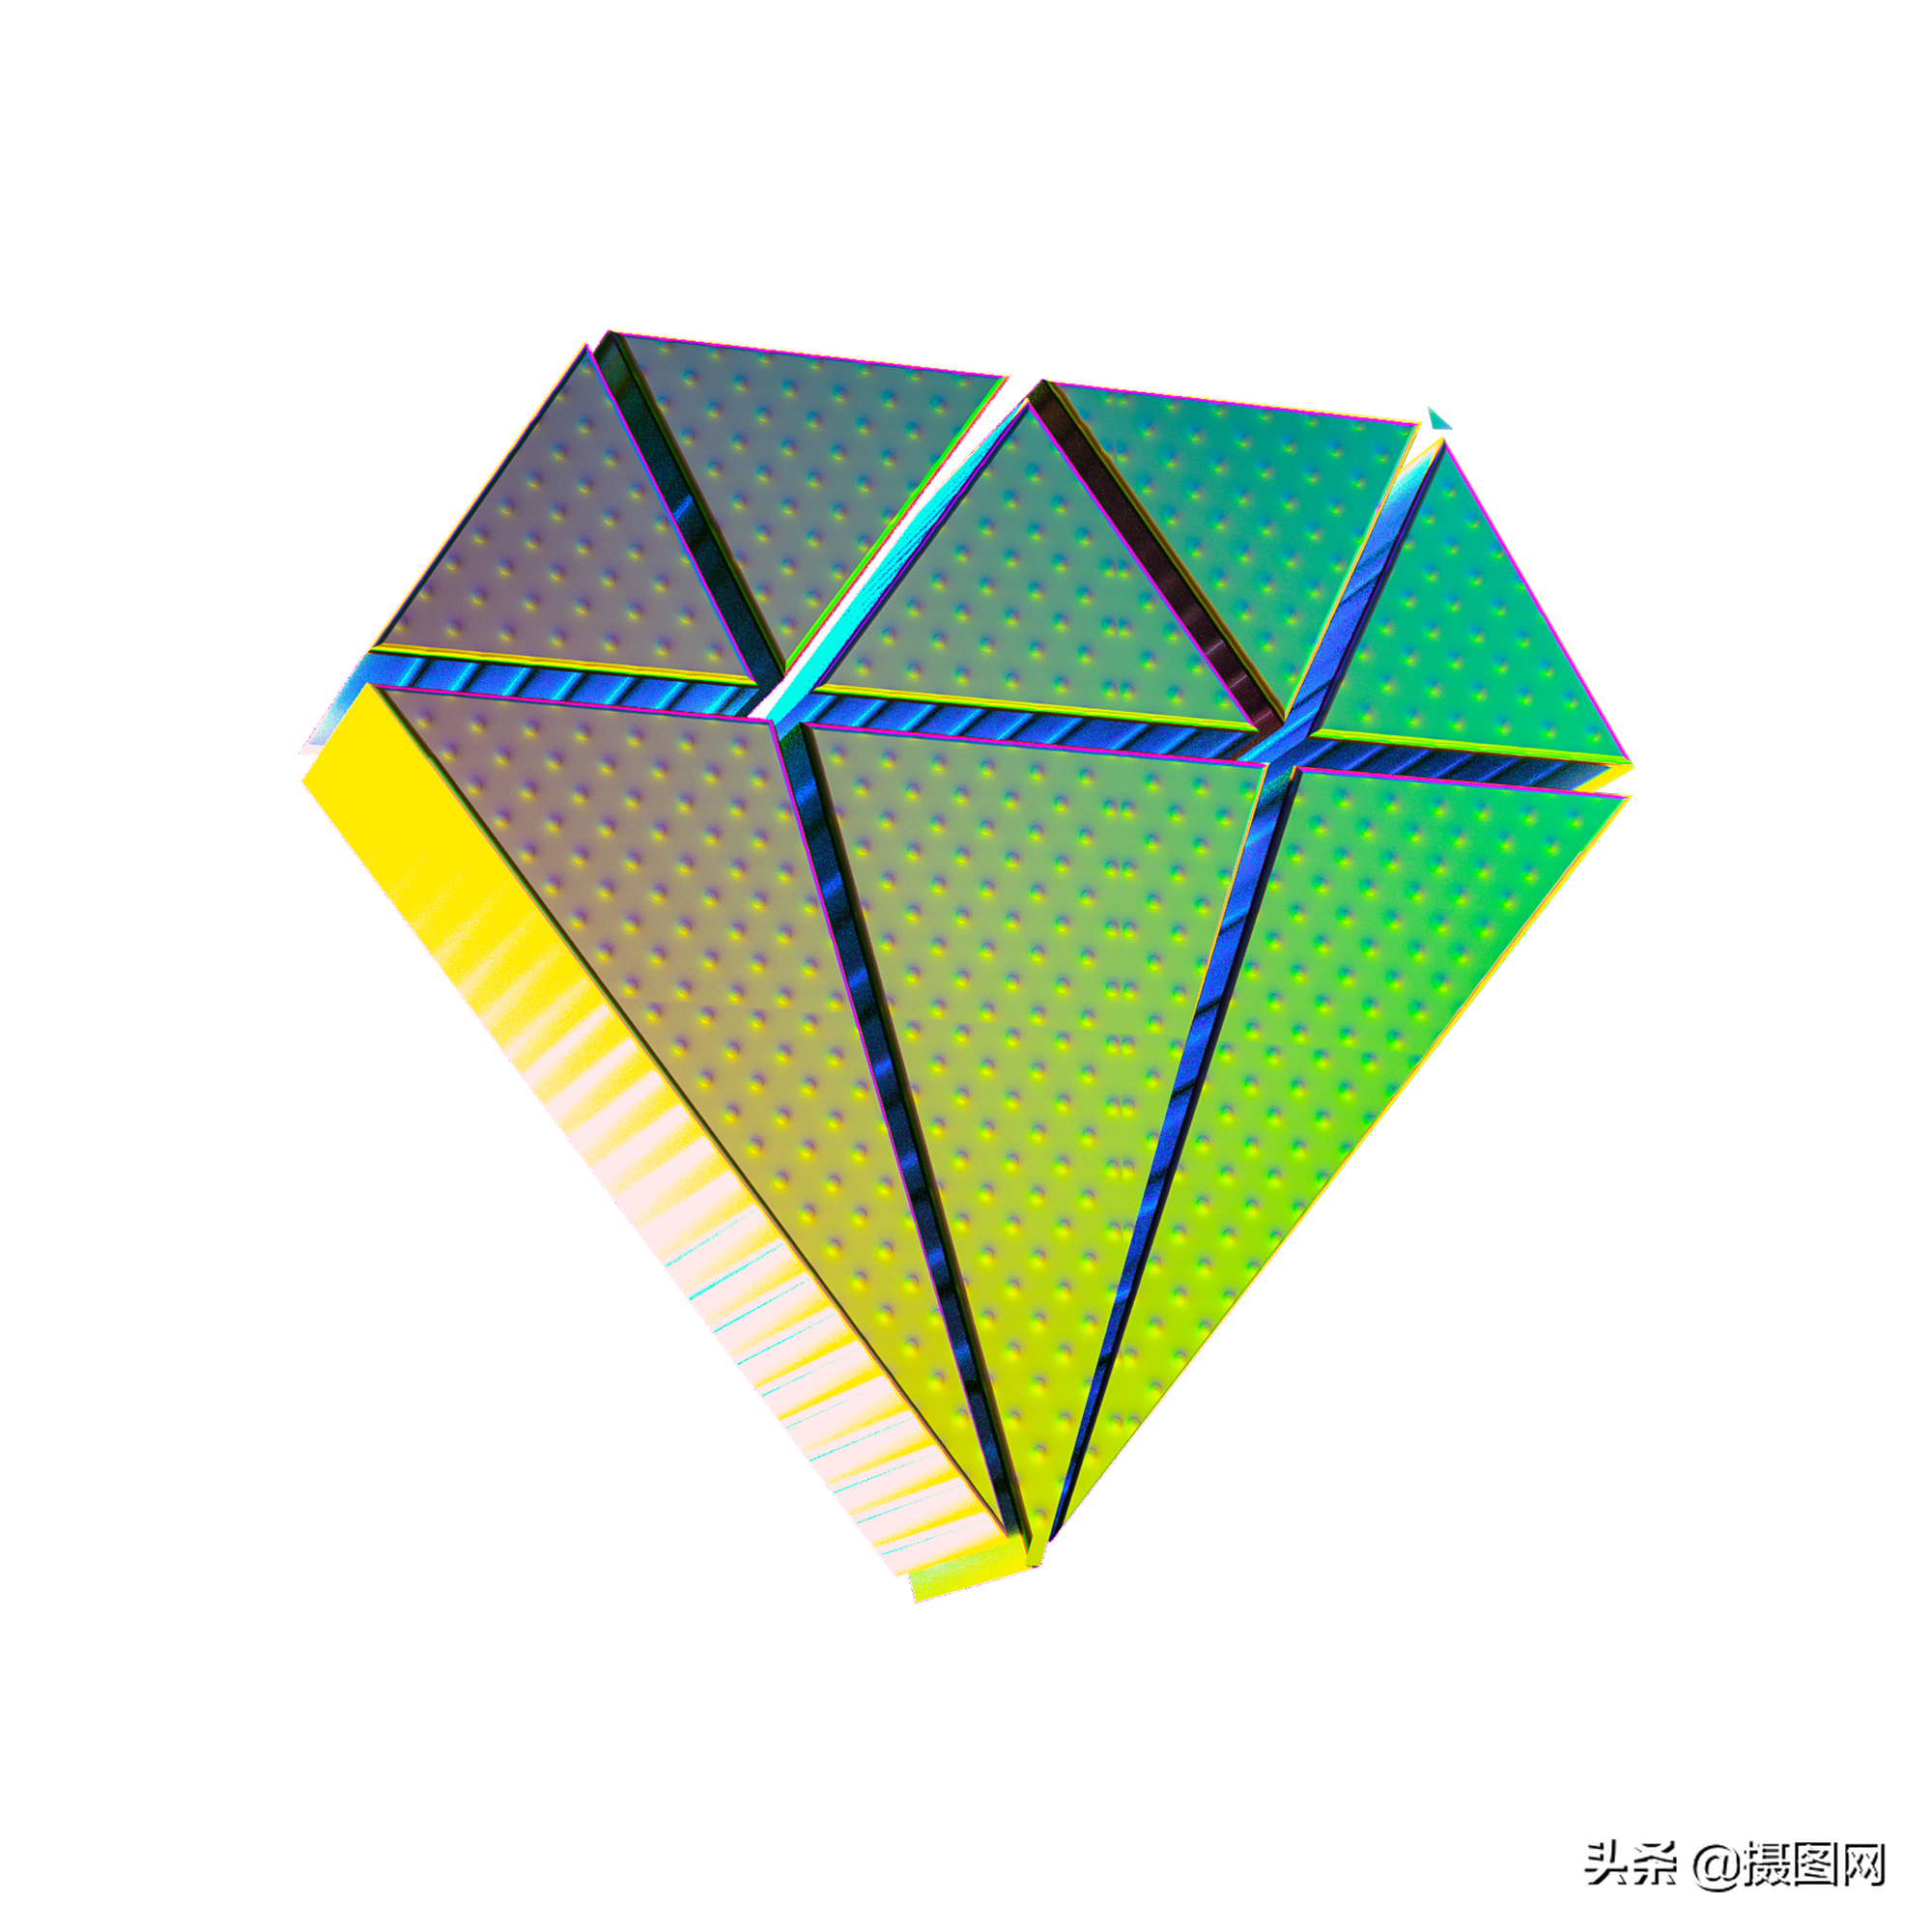 3D圖示|鐳射漸層立體圖示免摳元素